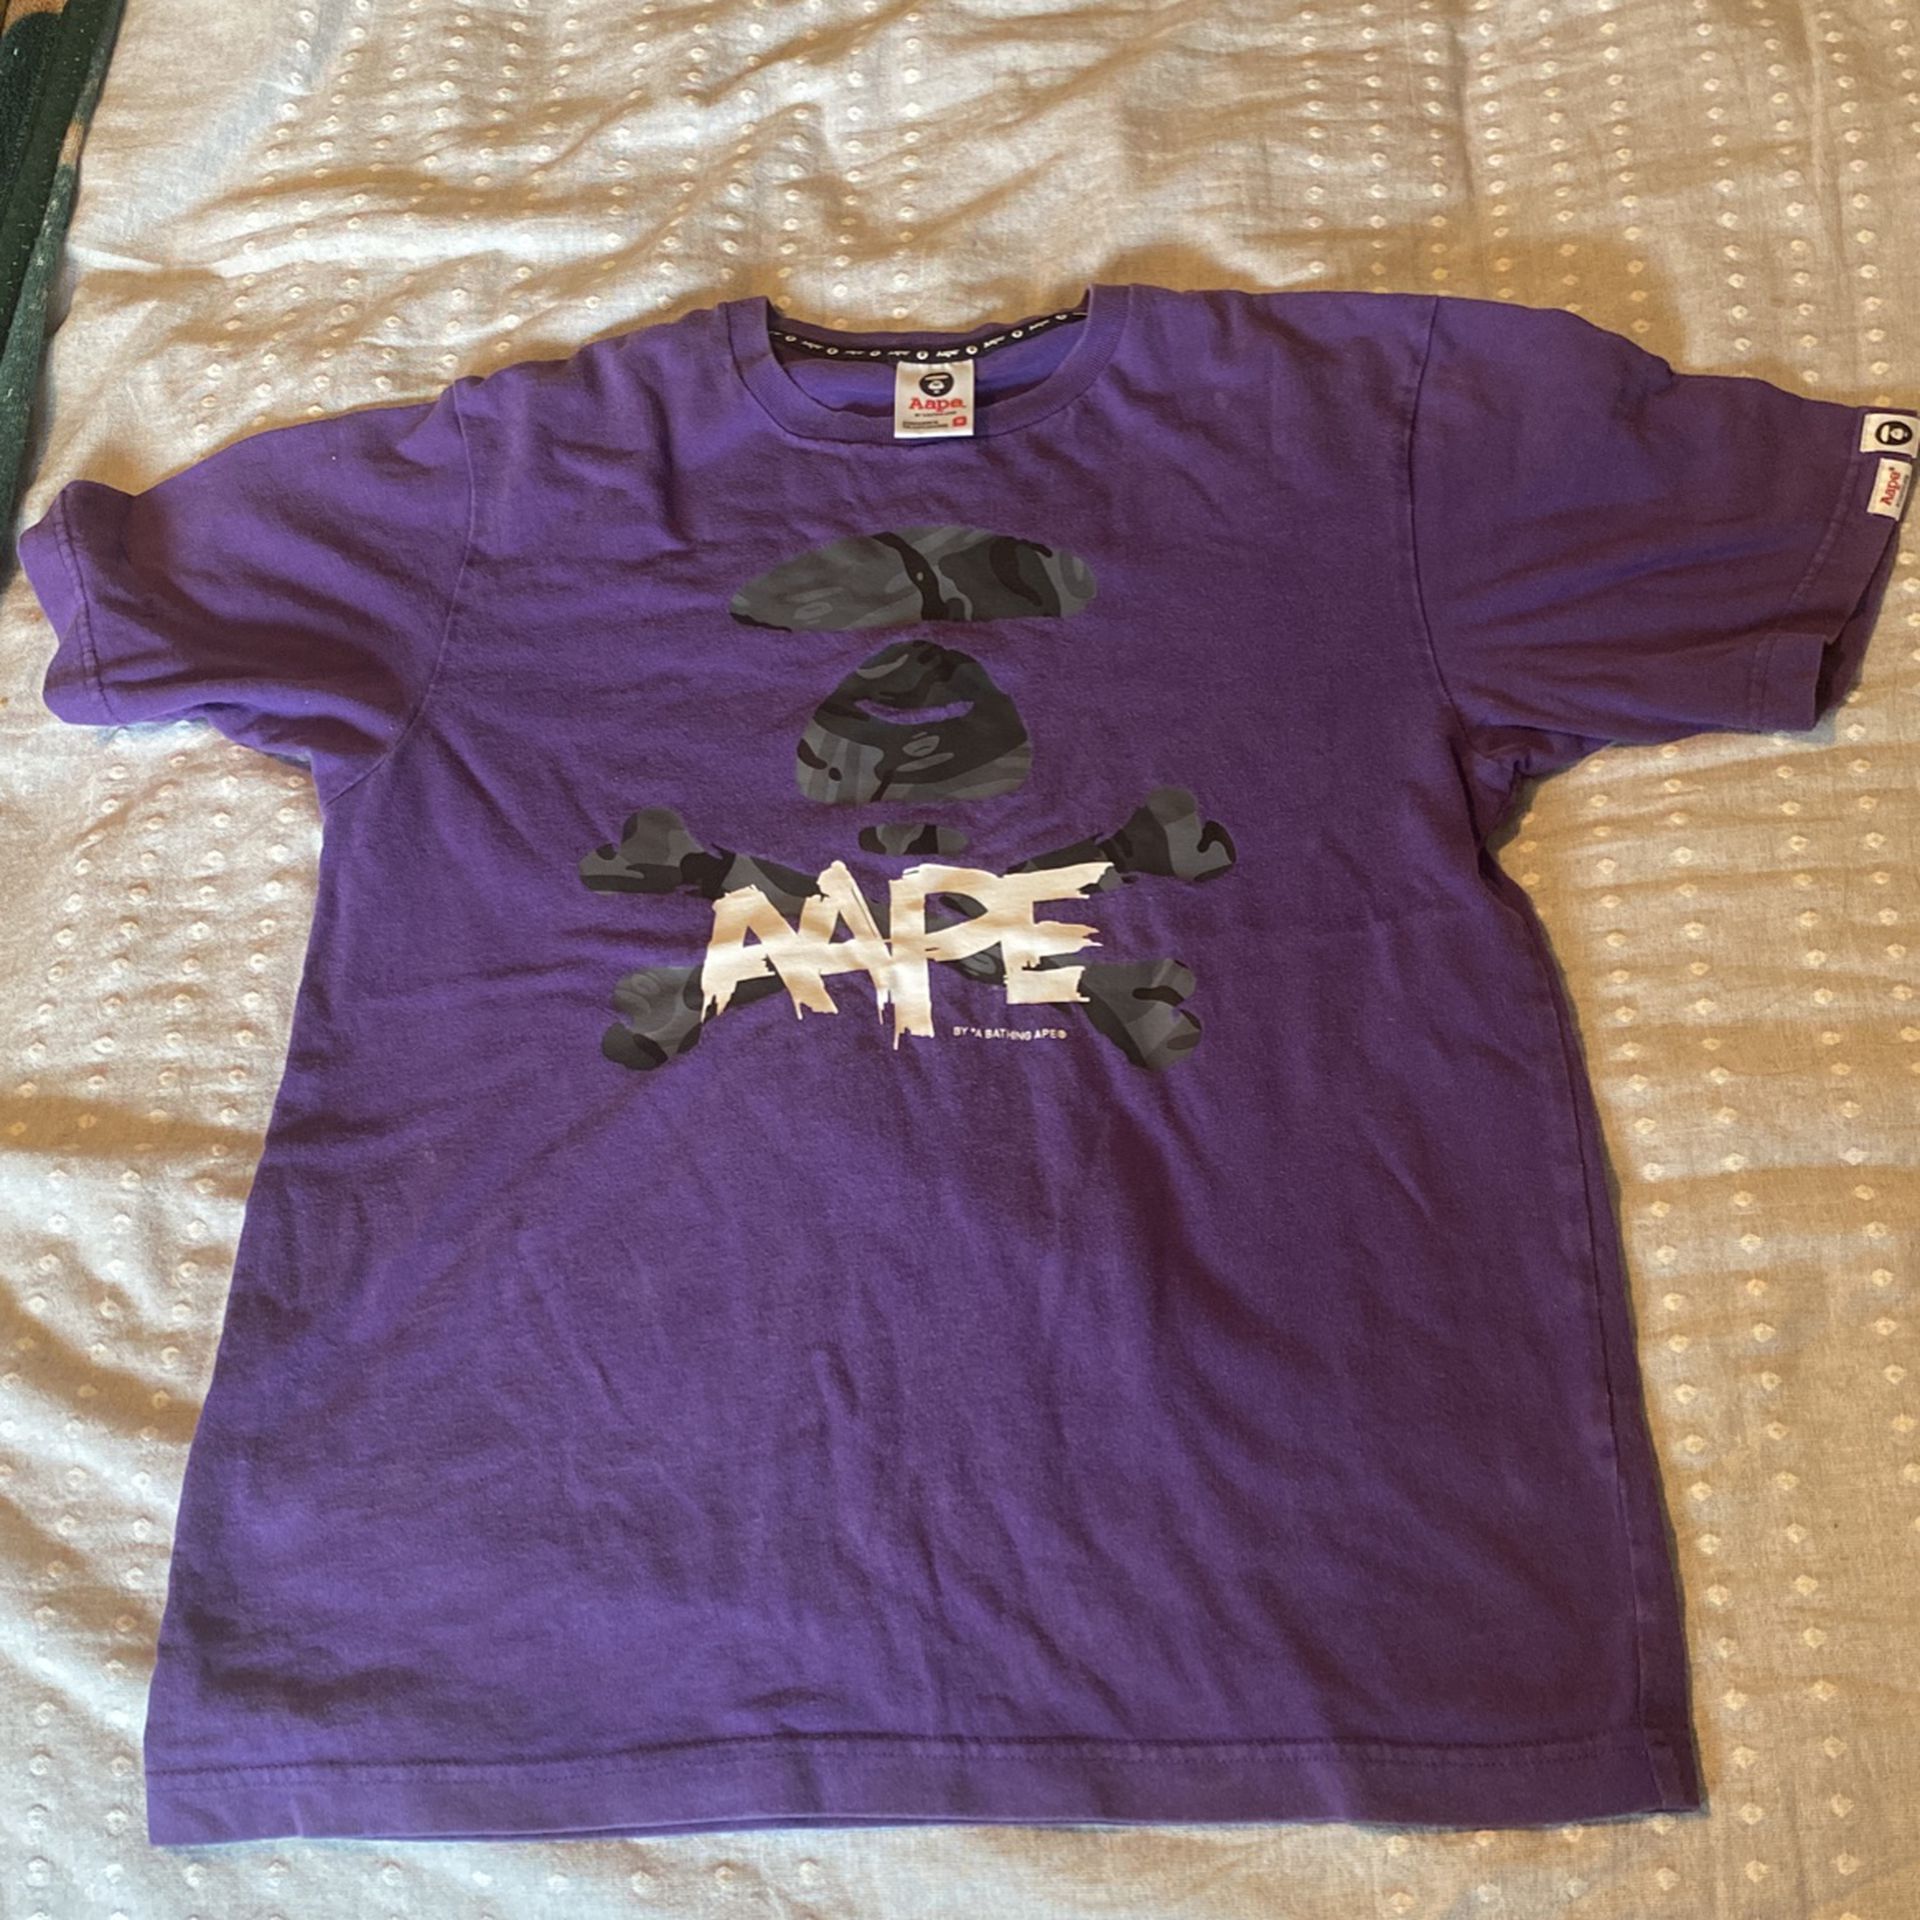 Aape Shirt By Bape 